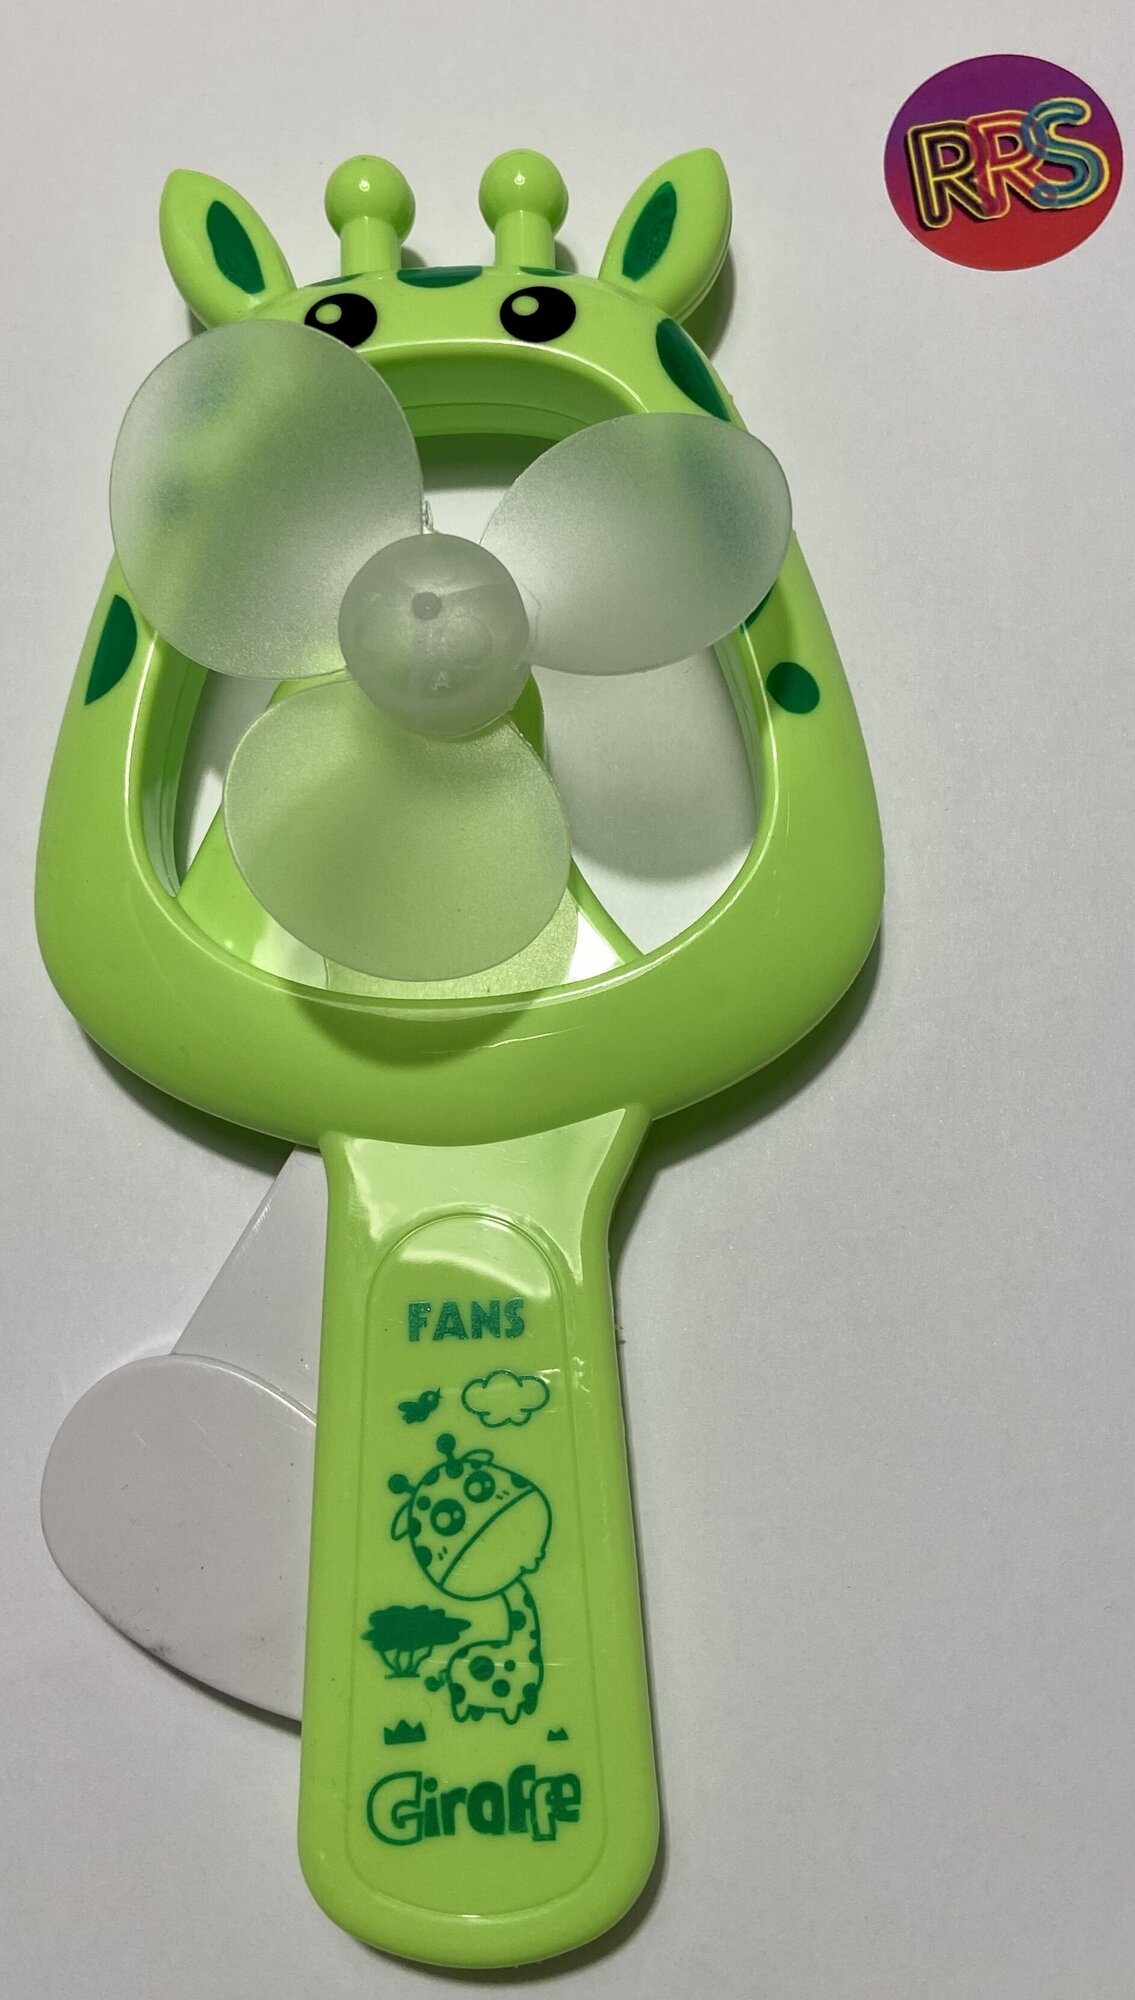 Вентилятор детский механический Giraffe, 20 см/ Вентилятор детский ручной/ Детский механический мини-вентилятор / игрушка Ветерок / Ручной вентилятор - фотография № 2